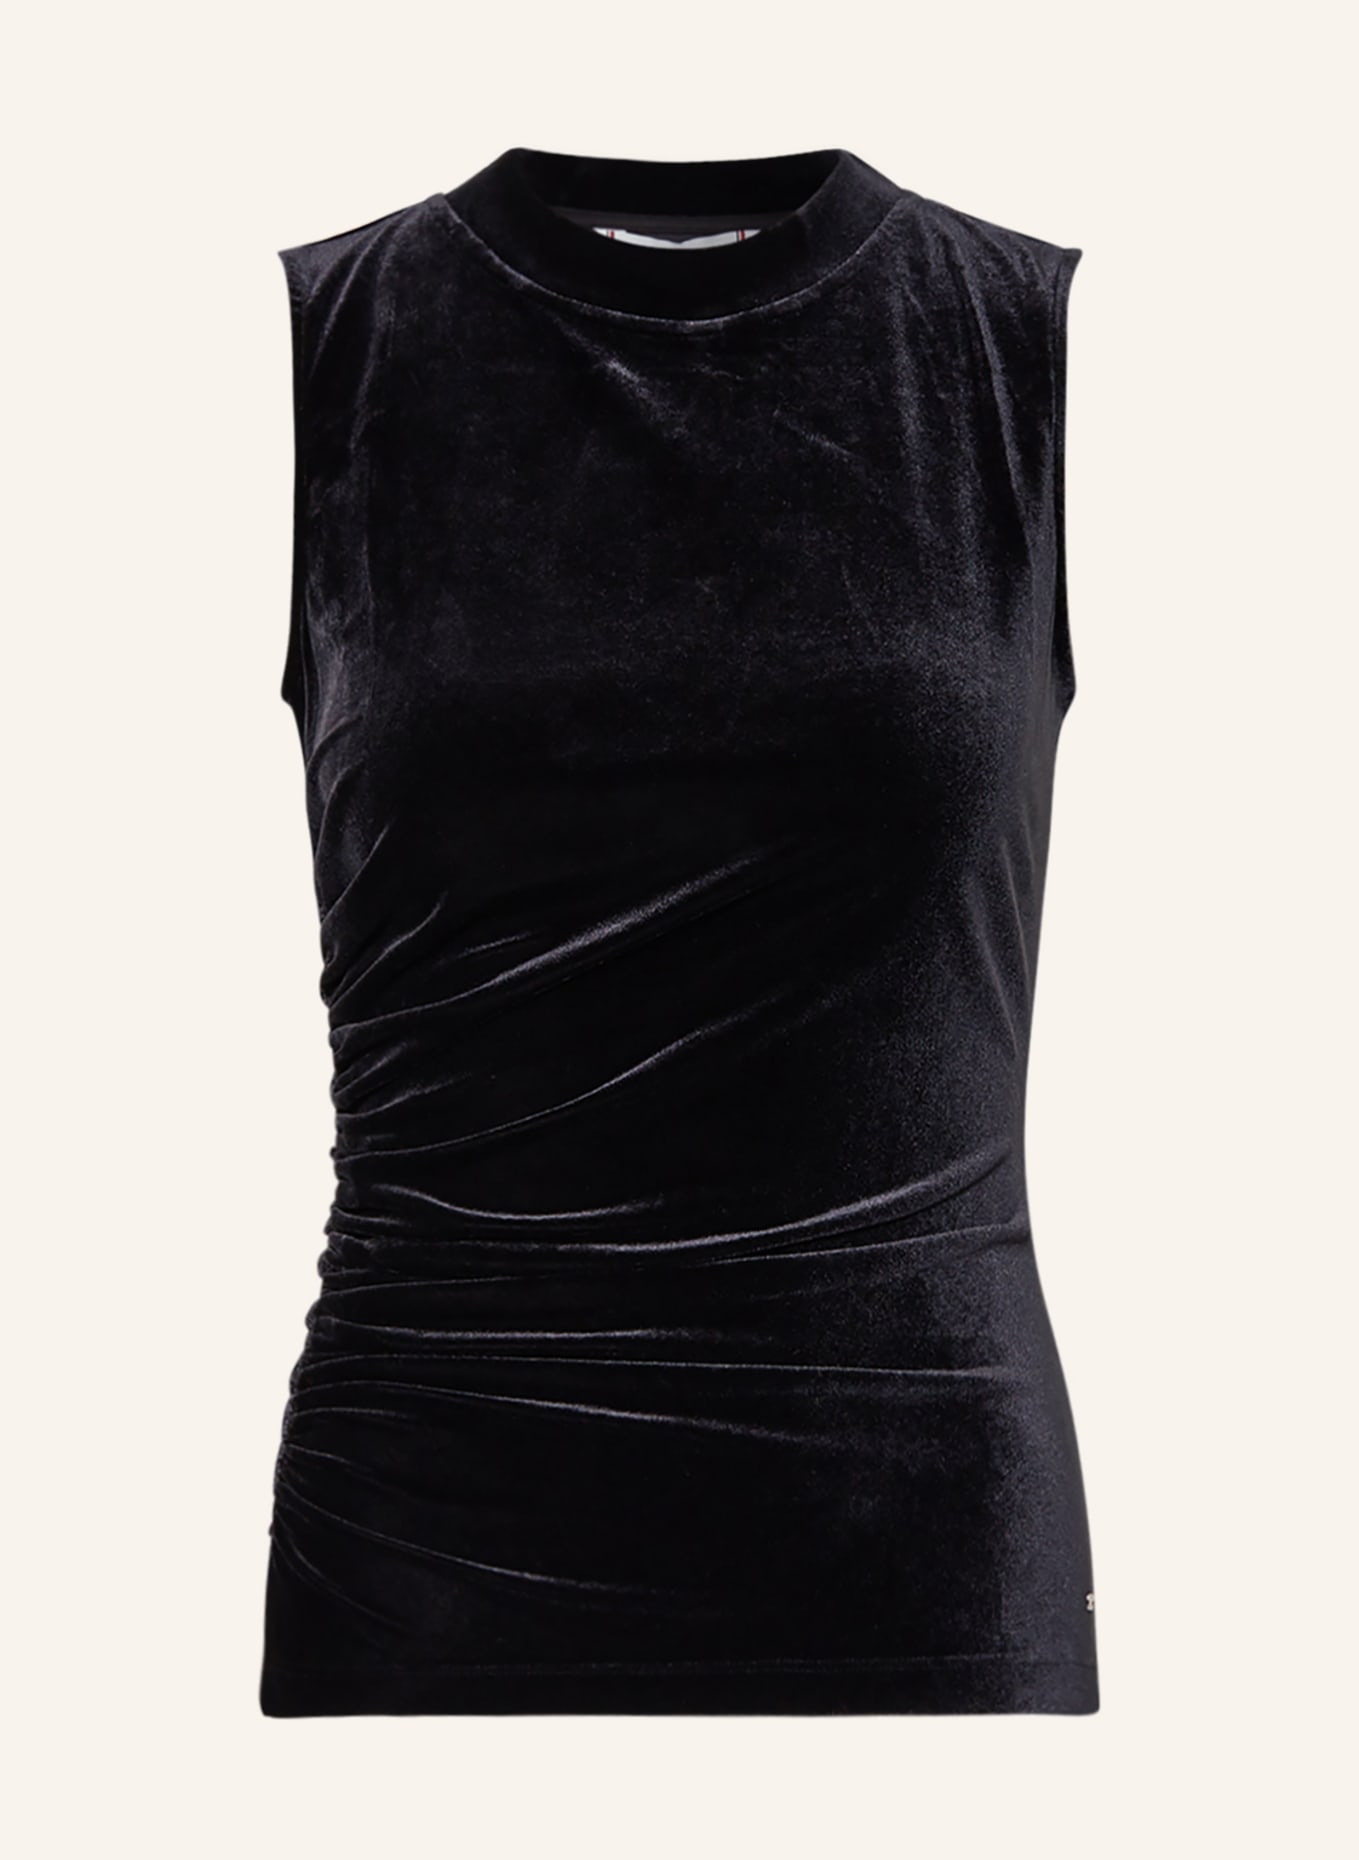 TOMMY HILFIGER Blouse top made of velvet, Color: BLACK (Image 1)